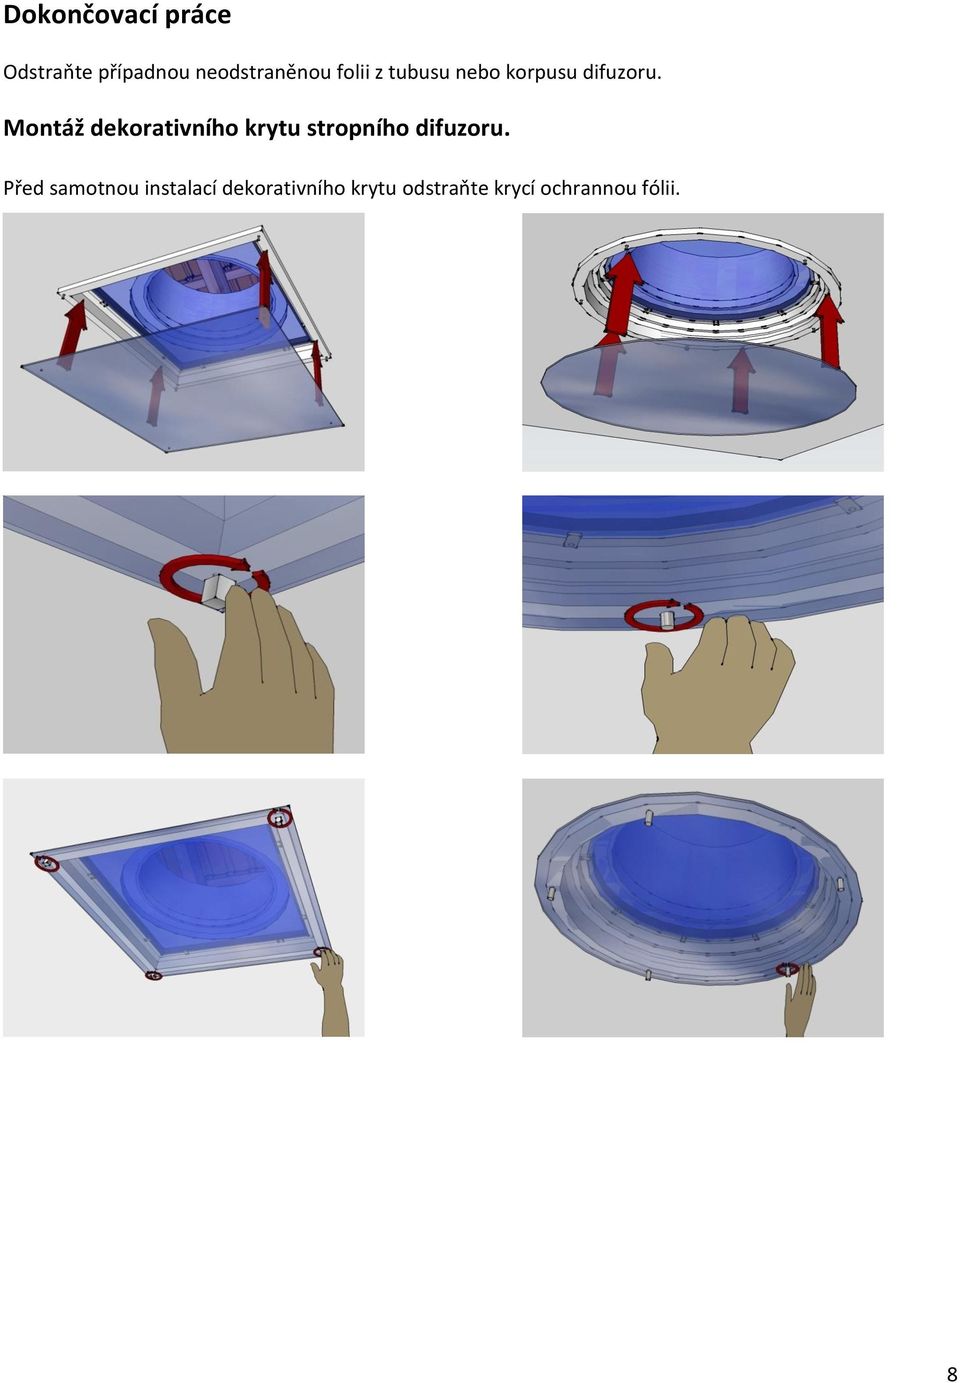 Montáž dekorativního krytu stropního difuzoru.